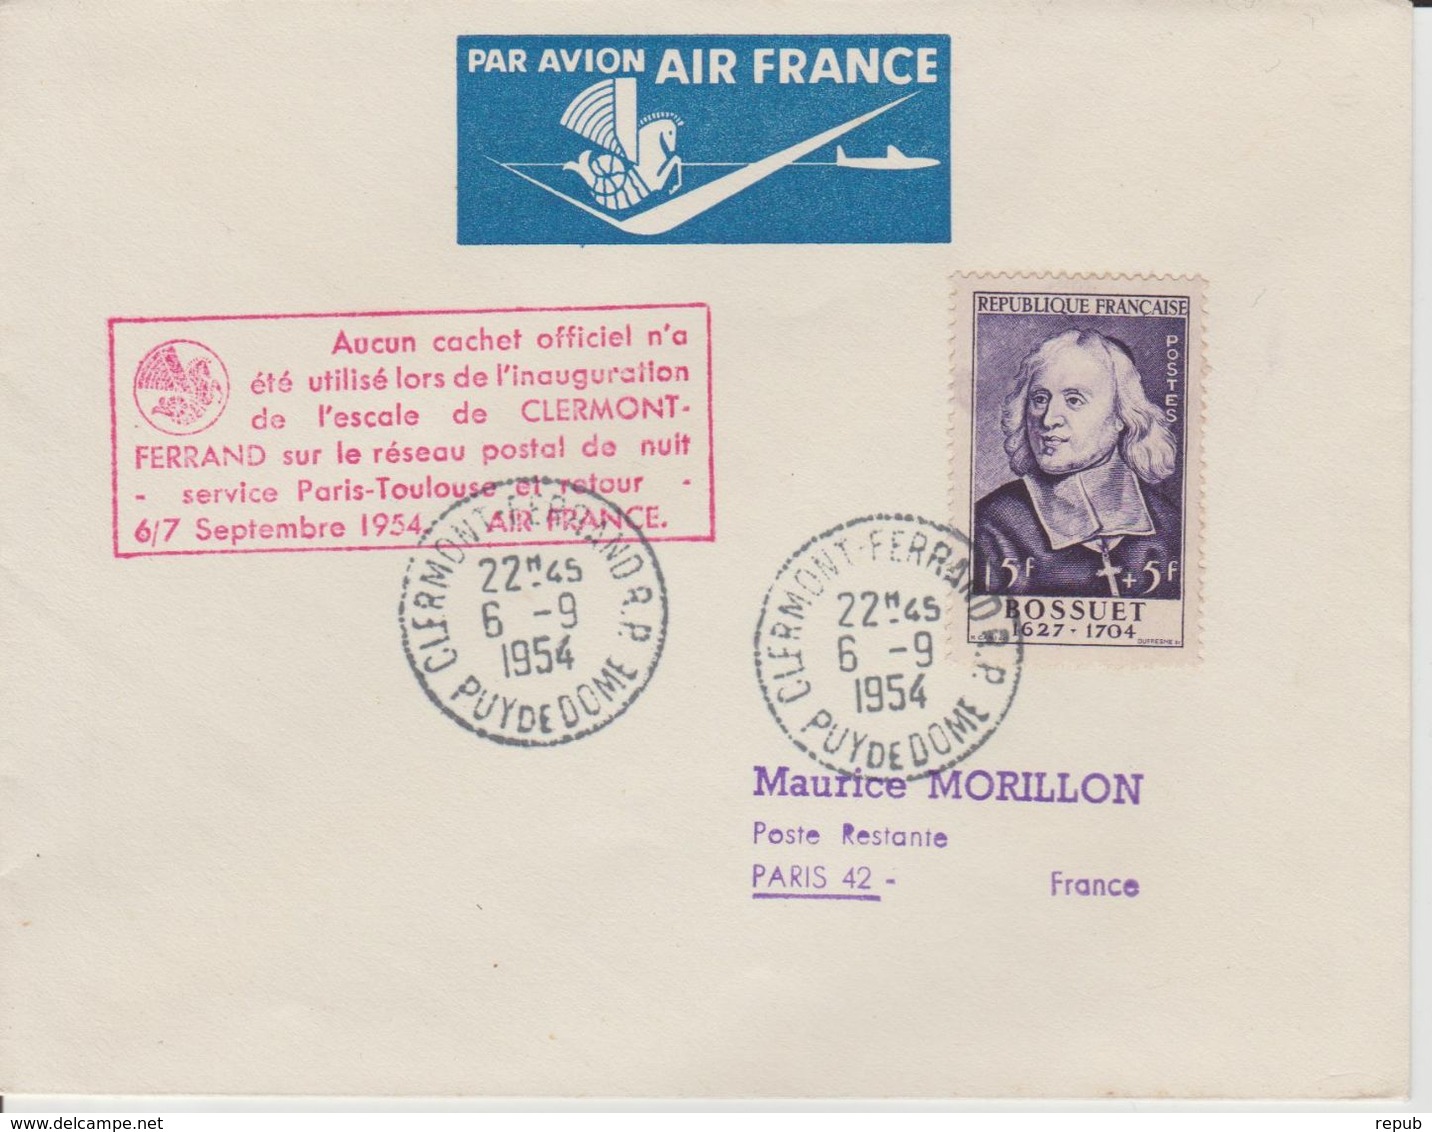 France 1954 Escale Clermont Ferrand Service Paris-Toulouse - Primi Voli